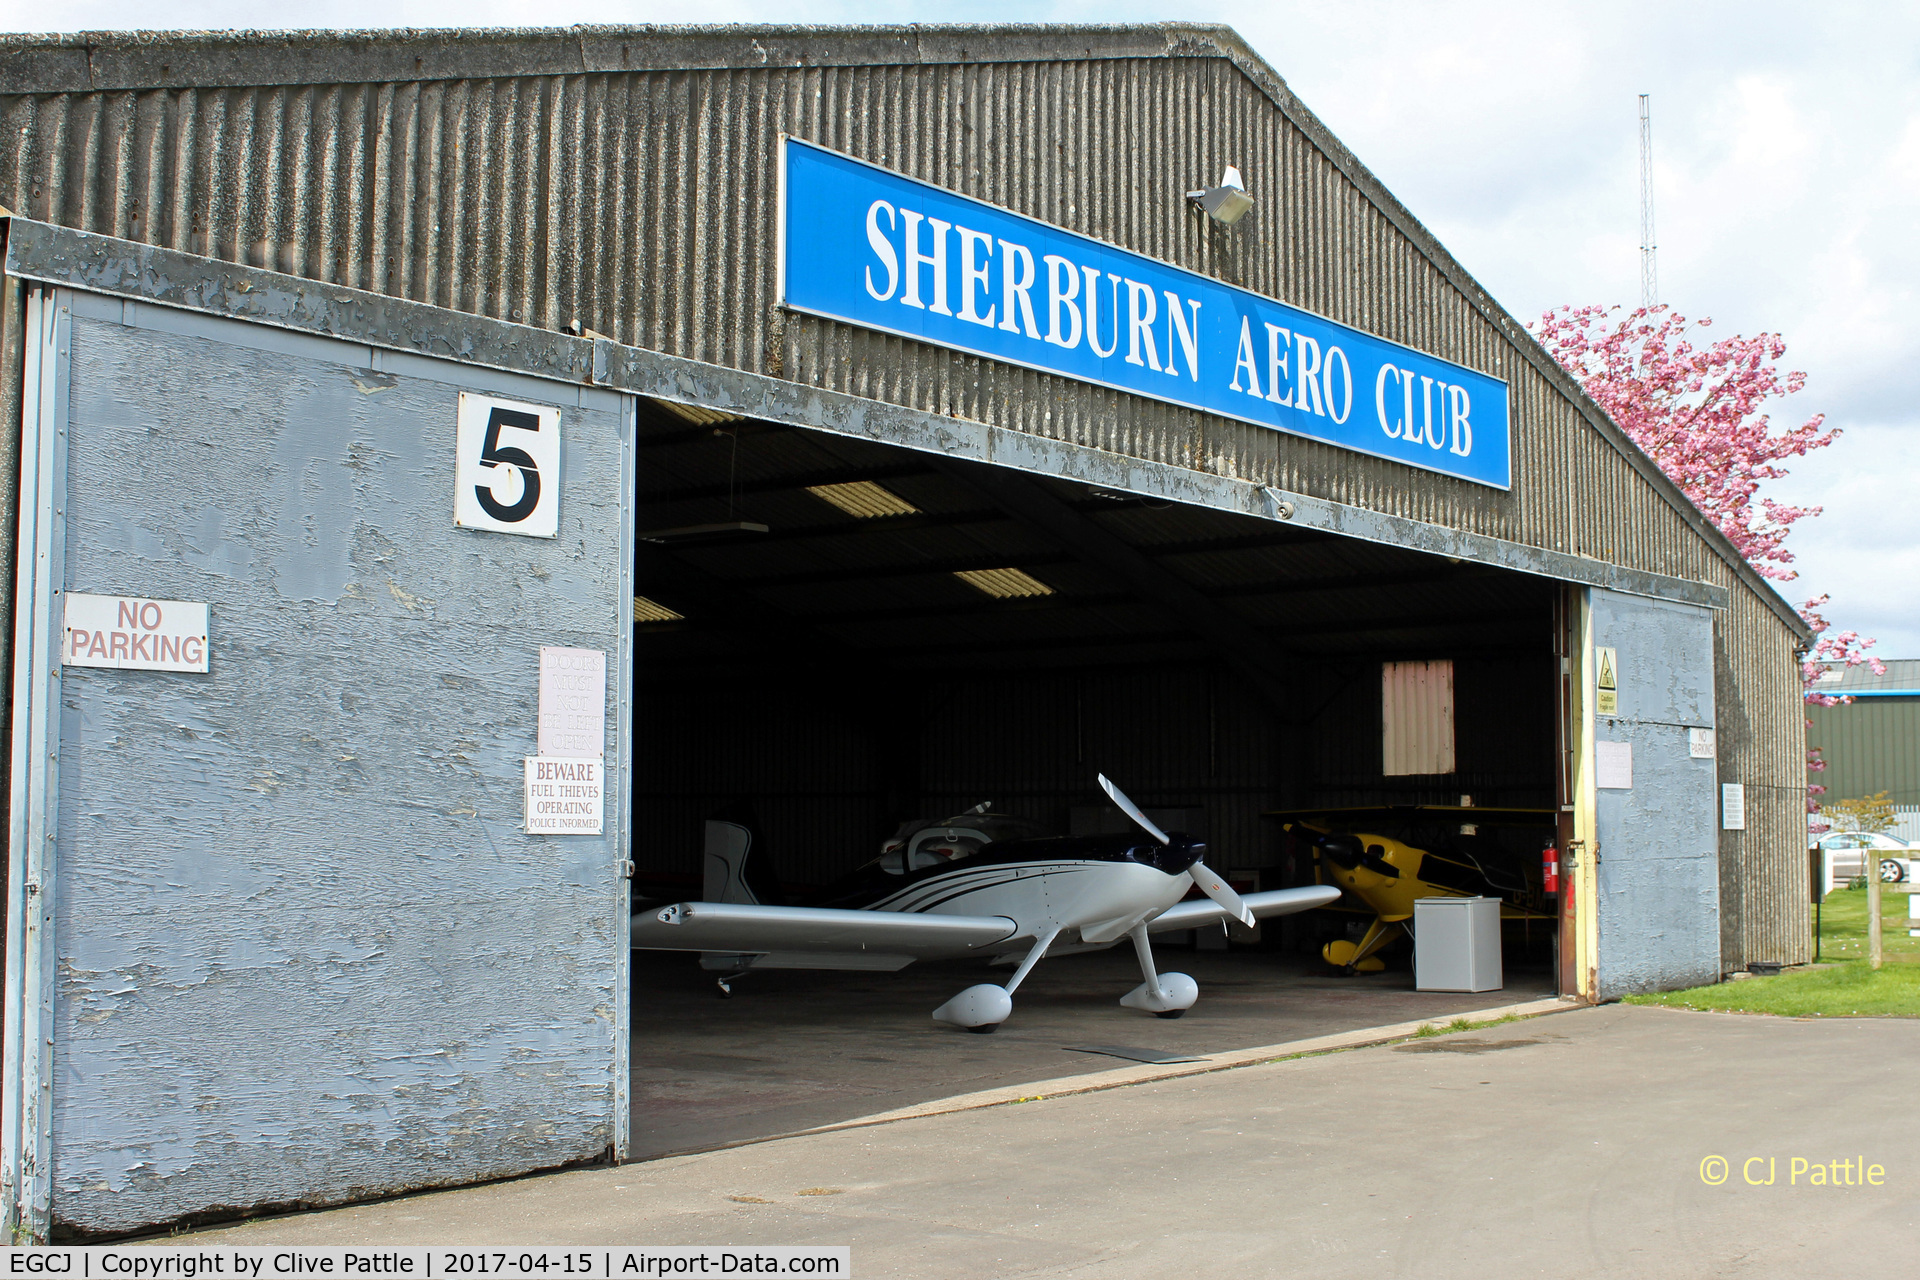 Sherburn-in-Elmet Airfield Airport, Sherburn-in-Elmet, England United Kingdom (EGCJ) - Hangar view at the GA airfield at Sherburn-in-Elmet EGCJ